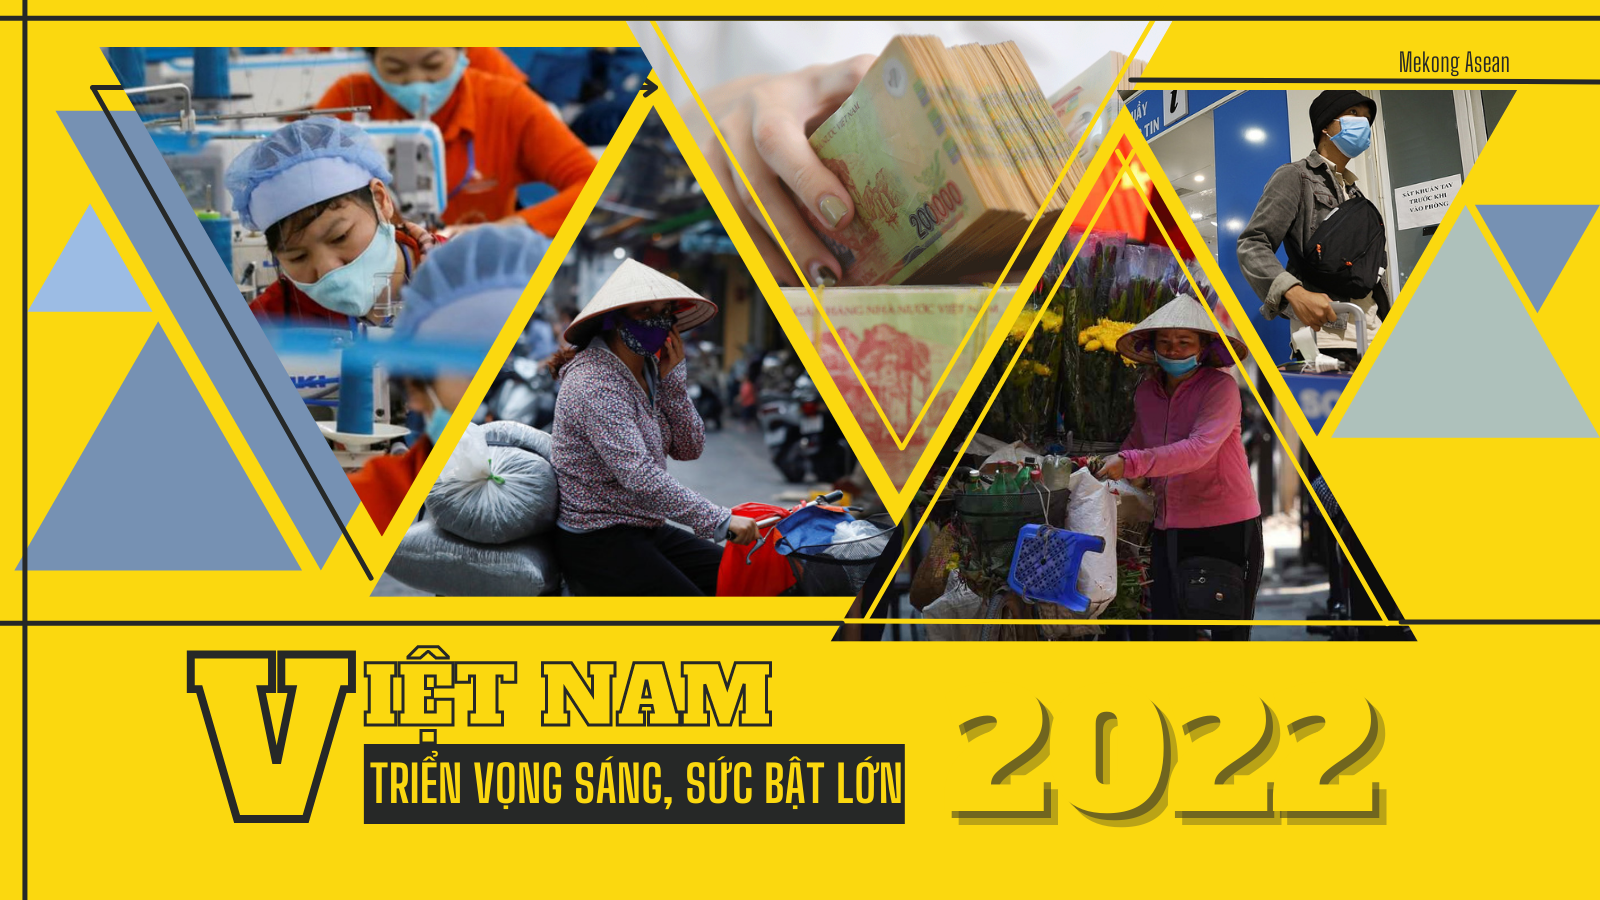 Kinh tế Việt Nam năm 2022: Triển vọng sáng, sức bật lớn